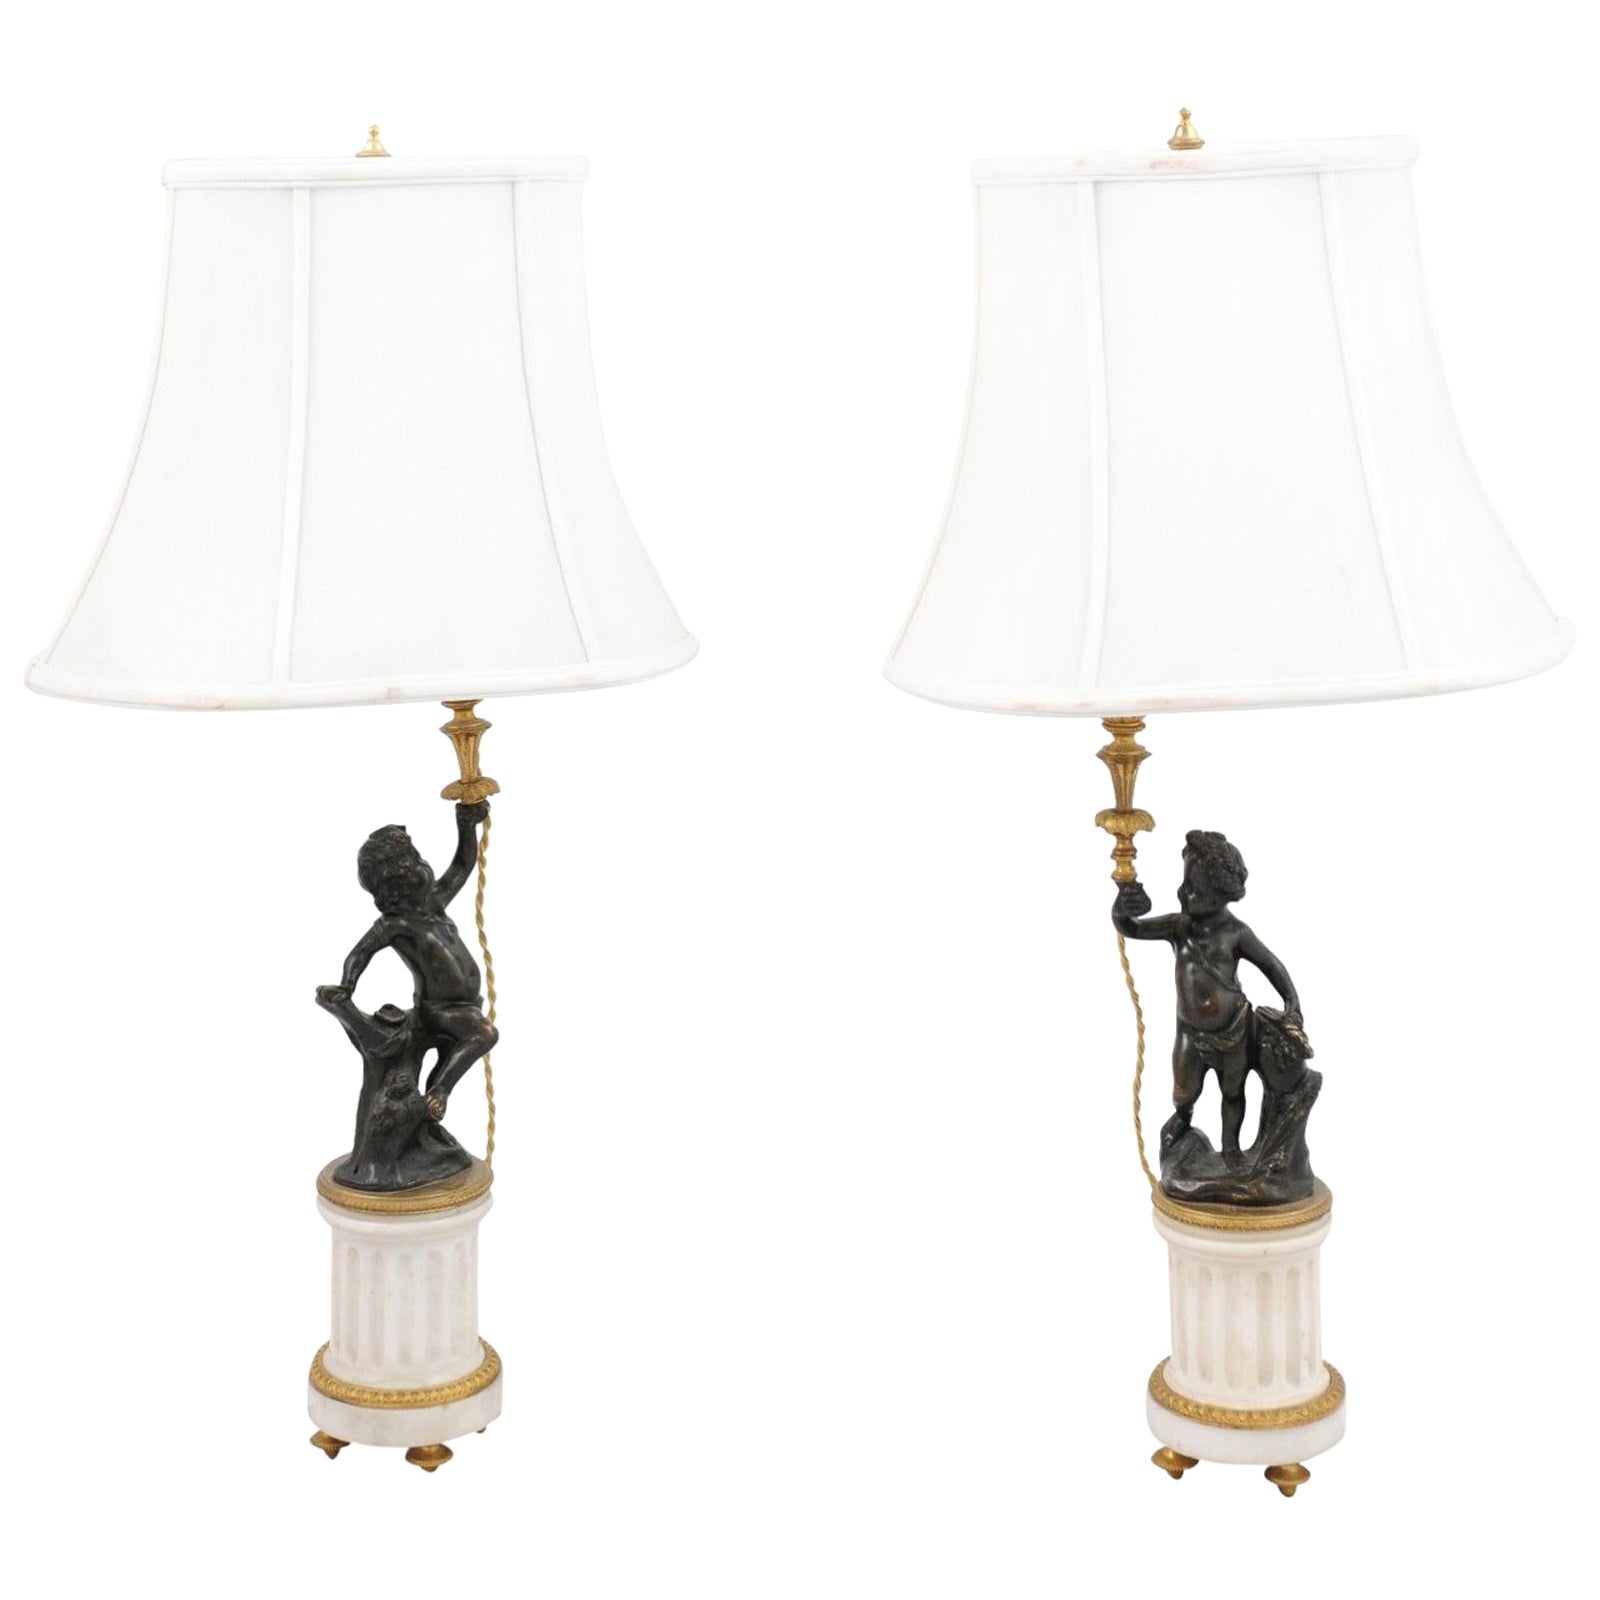 Paire de lampes Putti de style néoclassique français du 19ème siècle en marbre et bronze